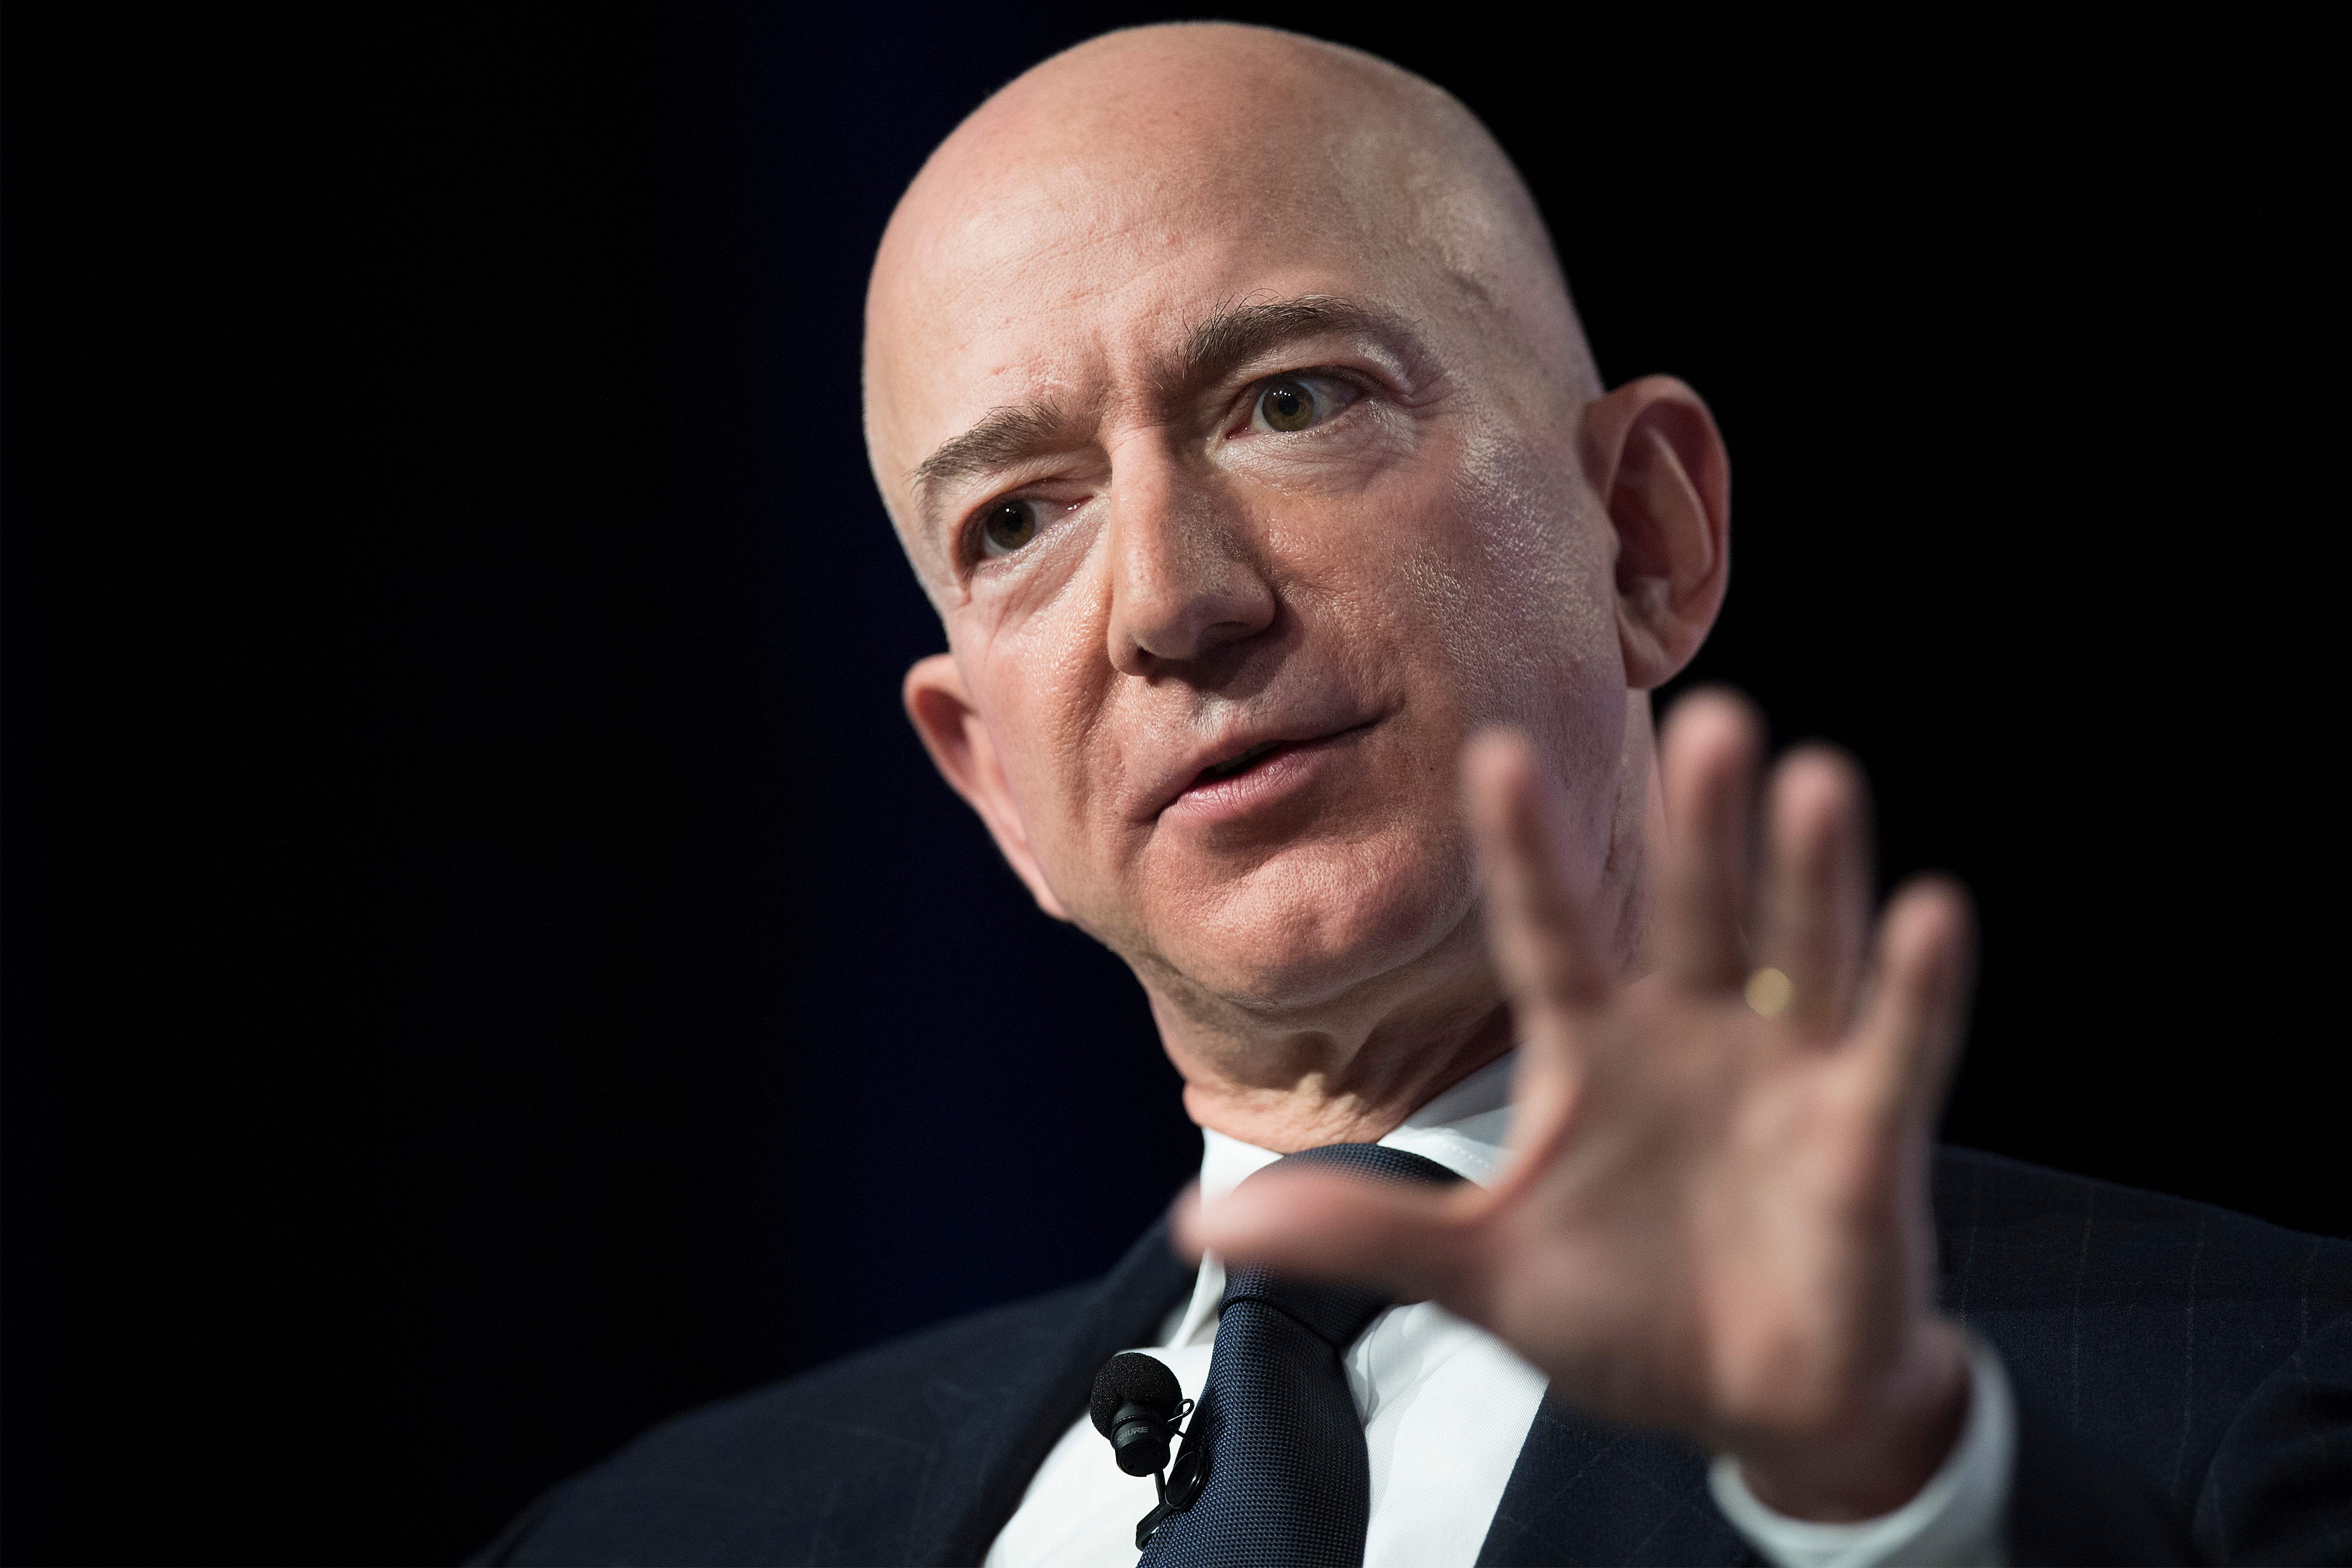 La fortuna de Bezos está valorada en 131.000 millones de dólares, según la revista Forbes. (Foto Prensa Libre: EFE)